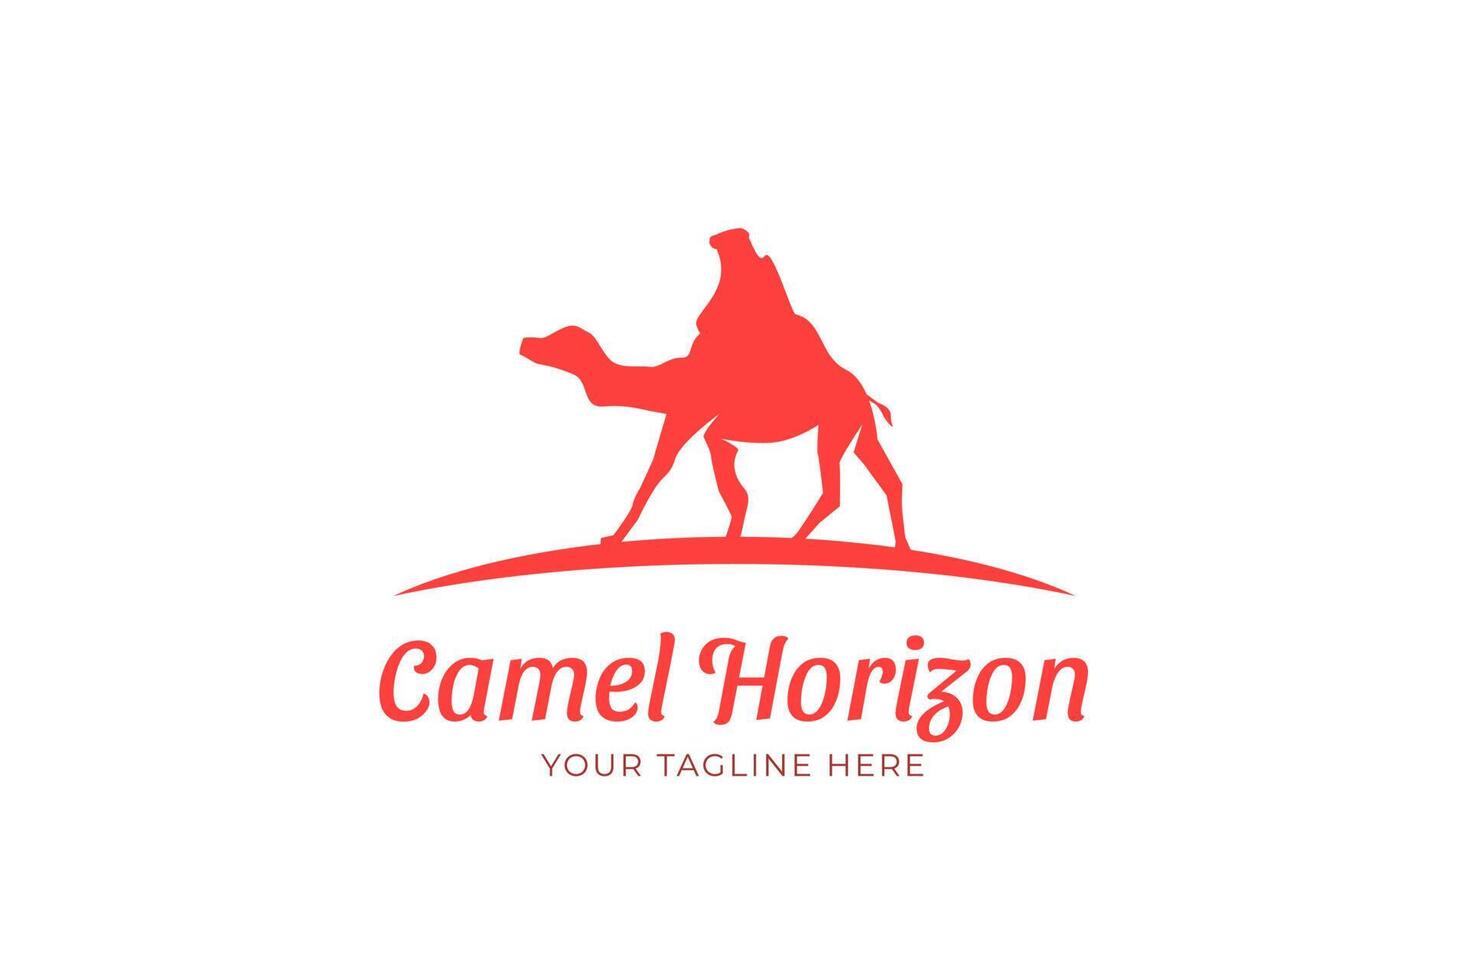 Camel horizon modern silhouette logo template vector